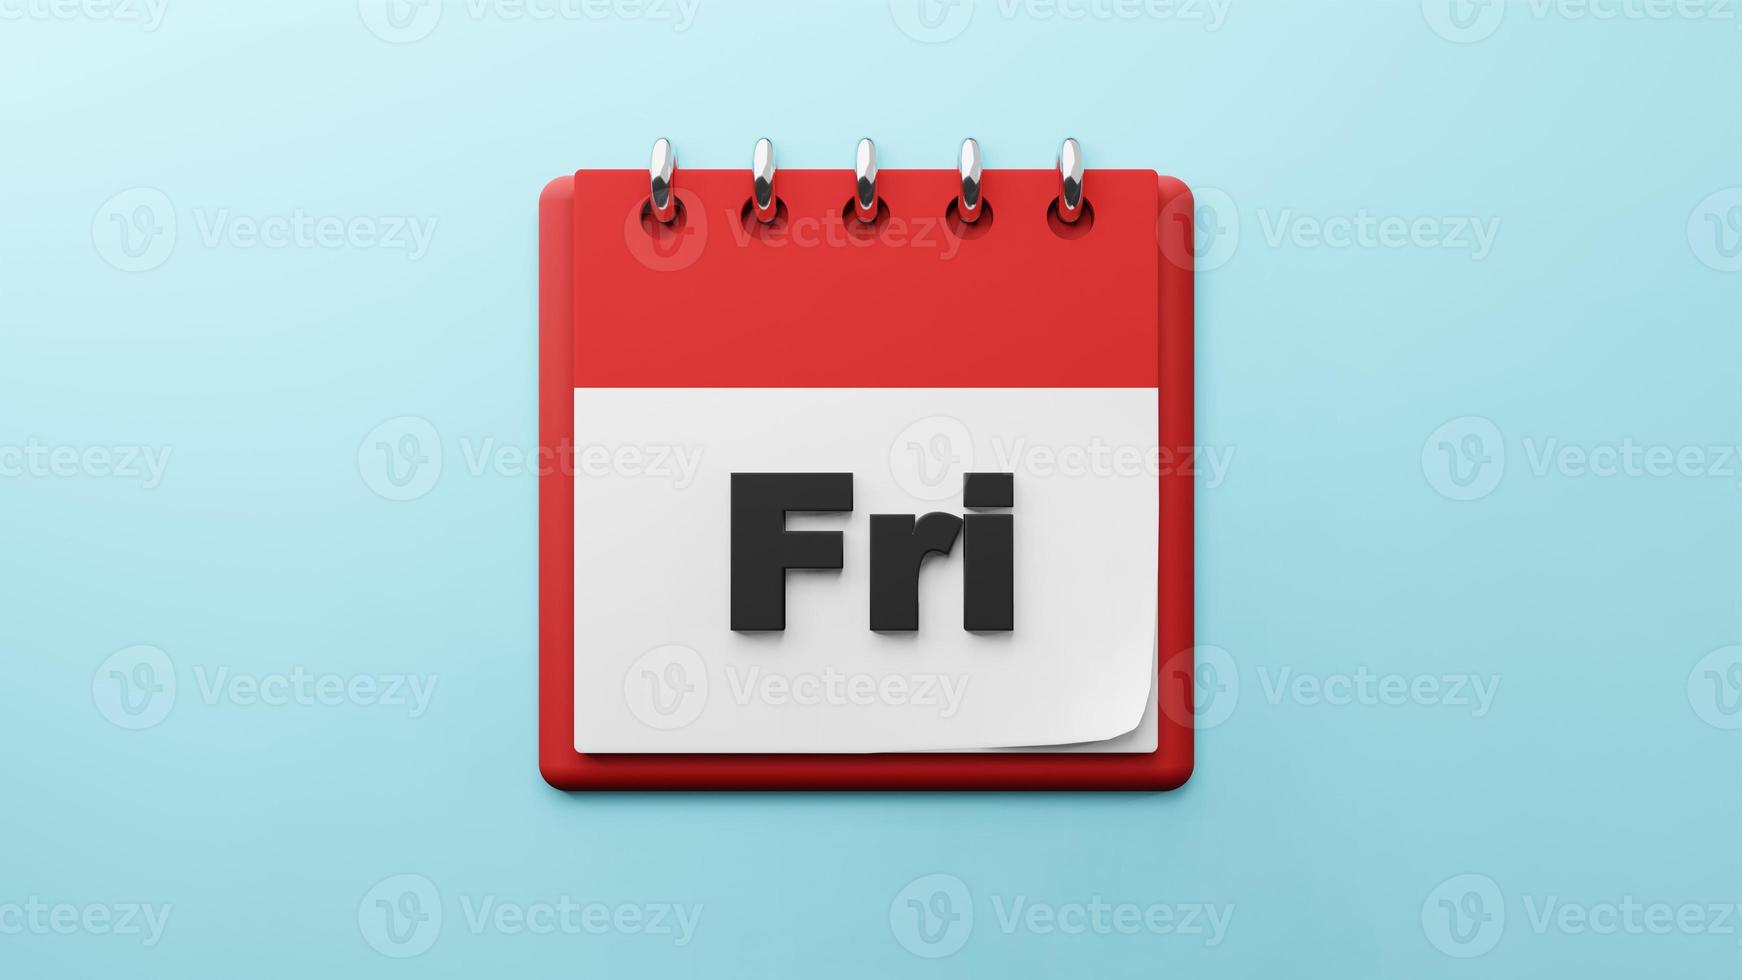 FRI Friday on  paper desk  calendar  3d rendering photo